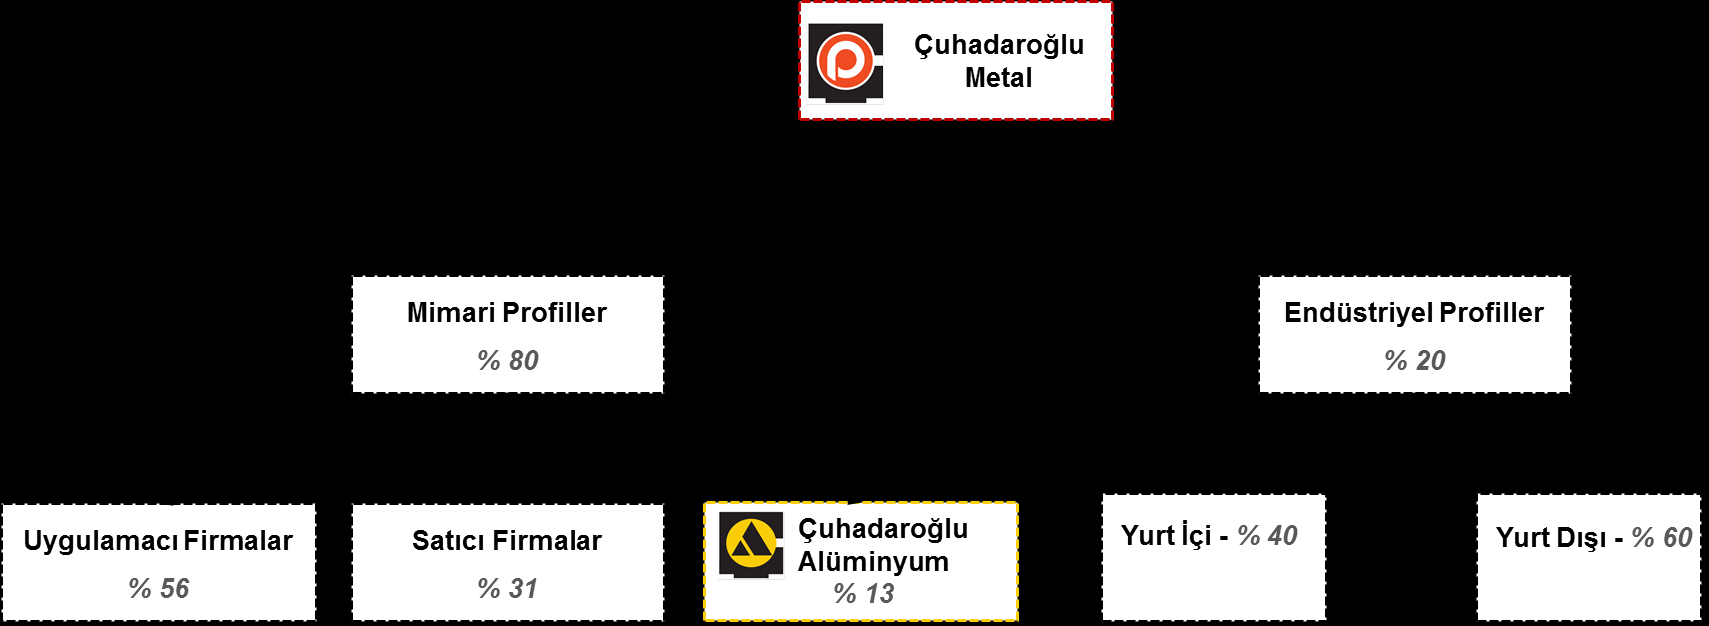 Üretim süreci: Çuhadaroğlu Metal, kendi üretimi için öncelikle külçe halinde birincil alüminyum tedariği sağlamaktadır.